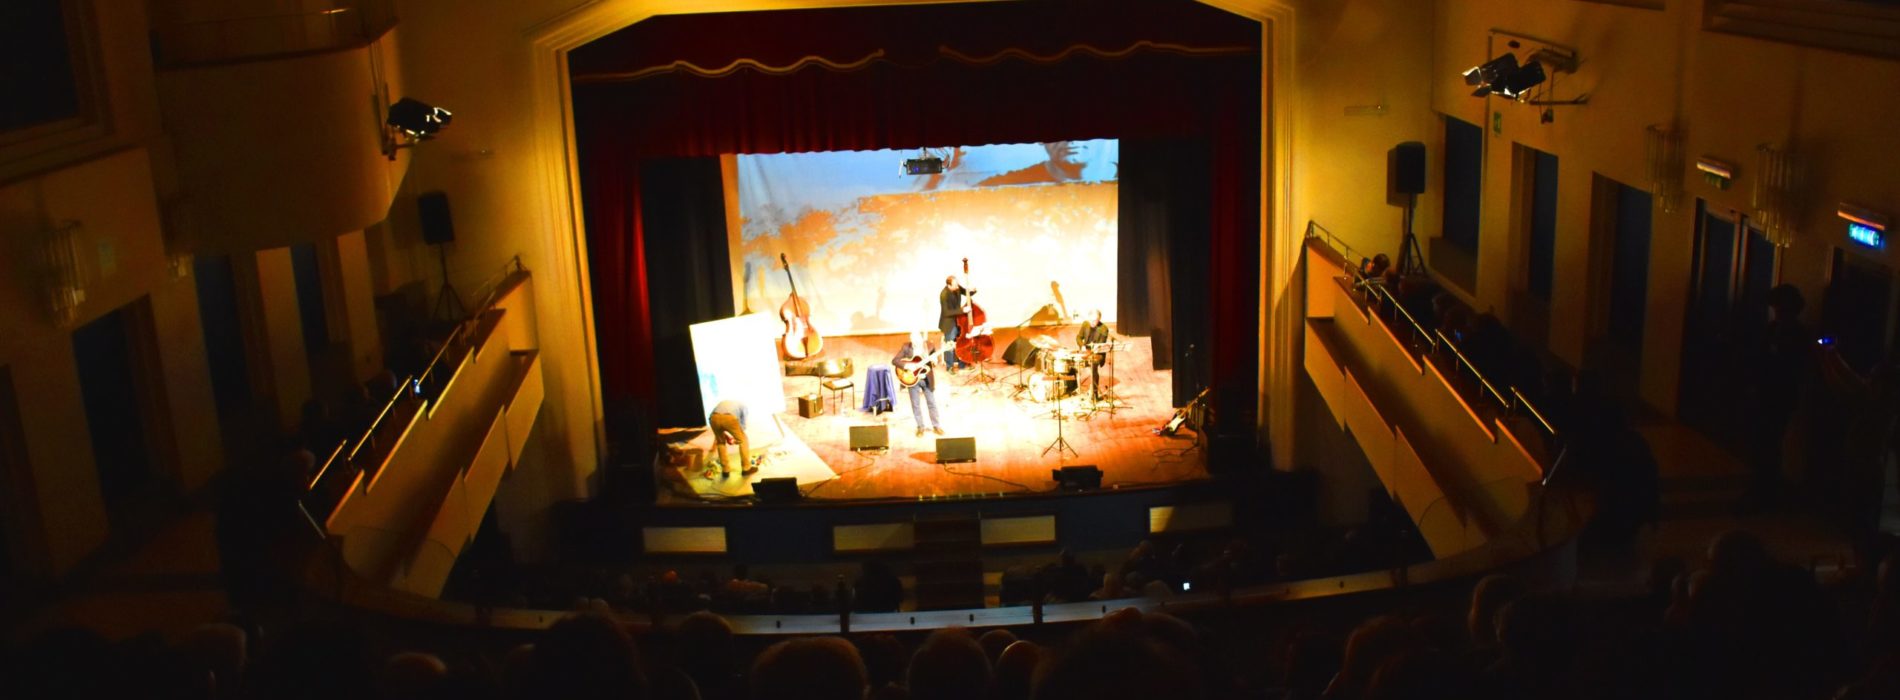 La musica dipinta. Teatro Comunale Caserta. Foto Gallery